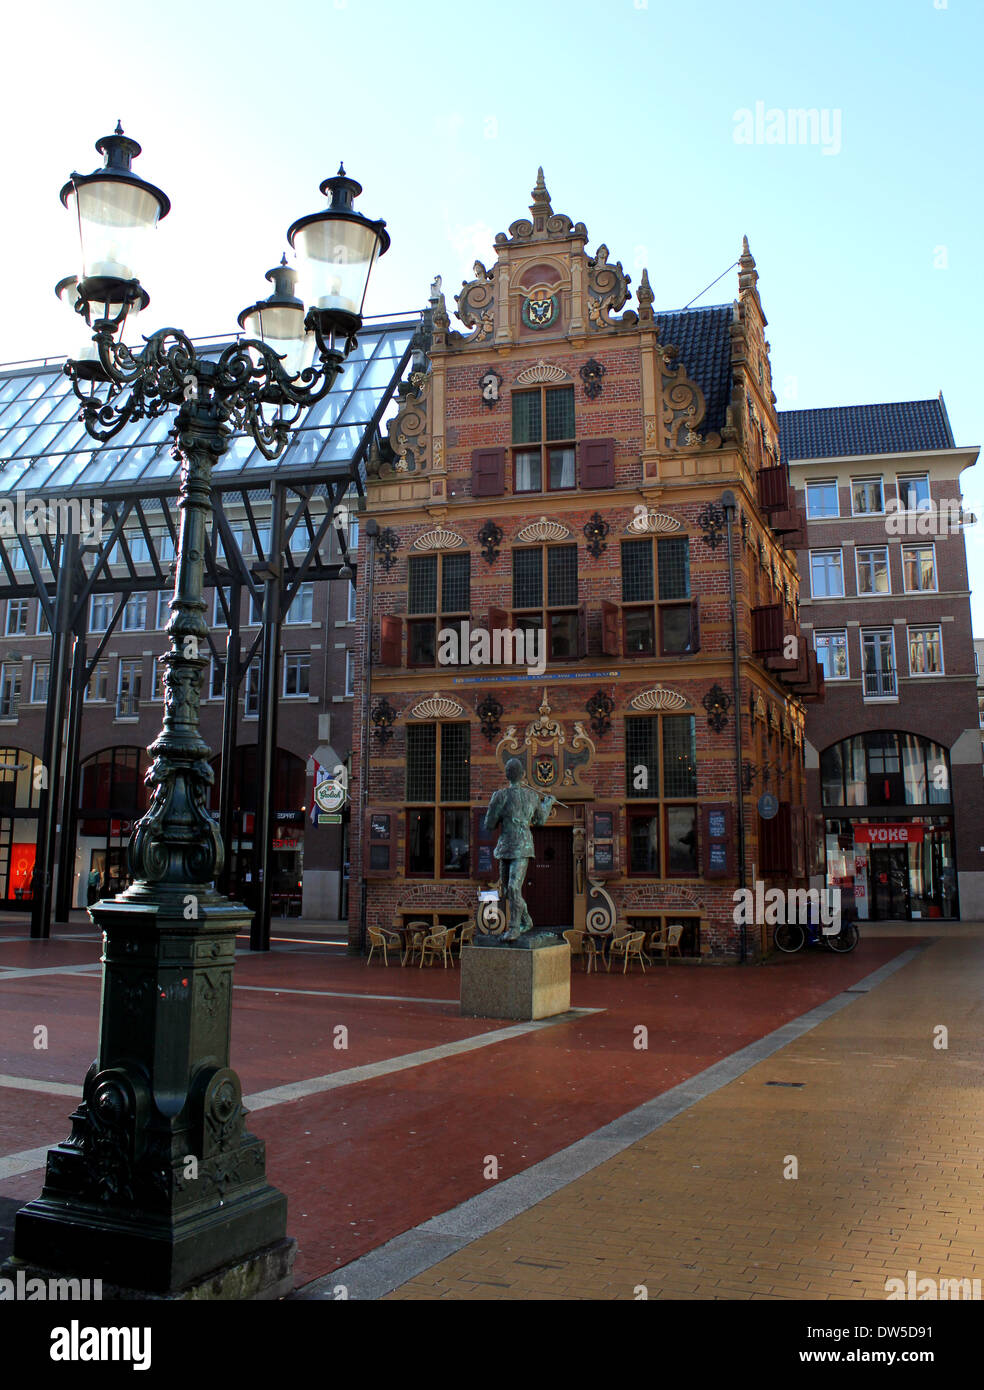 Or Goudkantoor (bureau) sur la Grand Place (place principale) de Groningen, Pays-Bas Banque D'Images